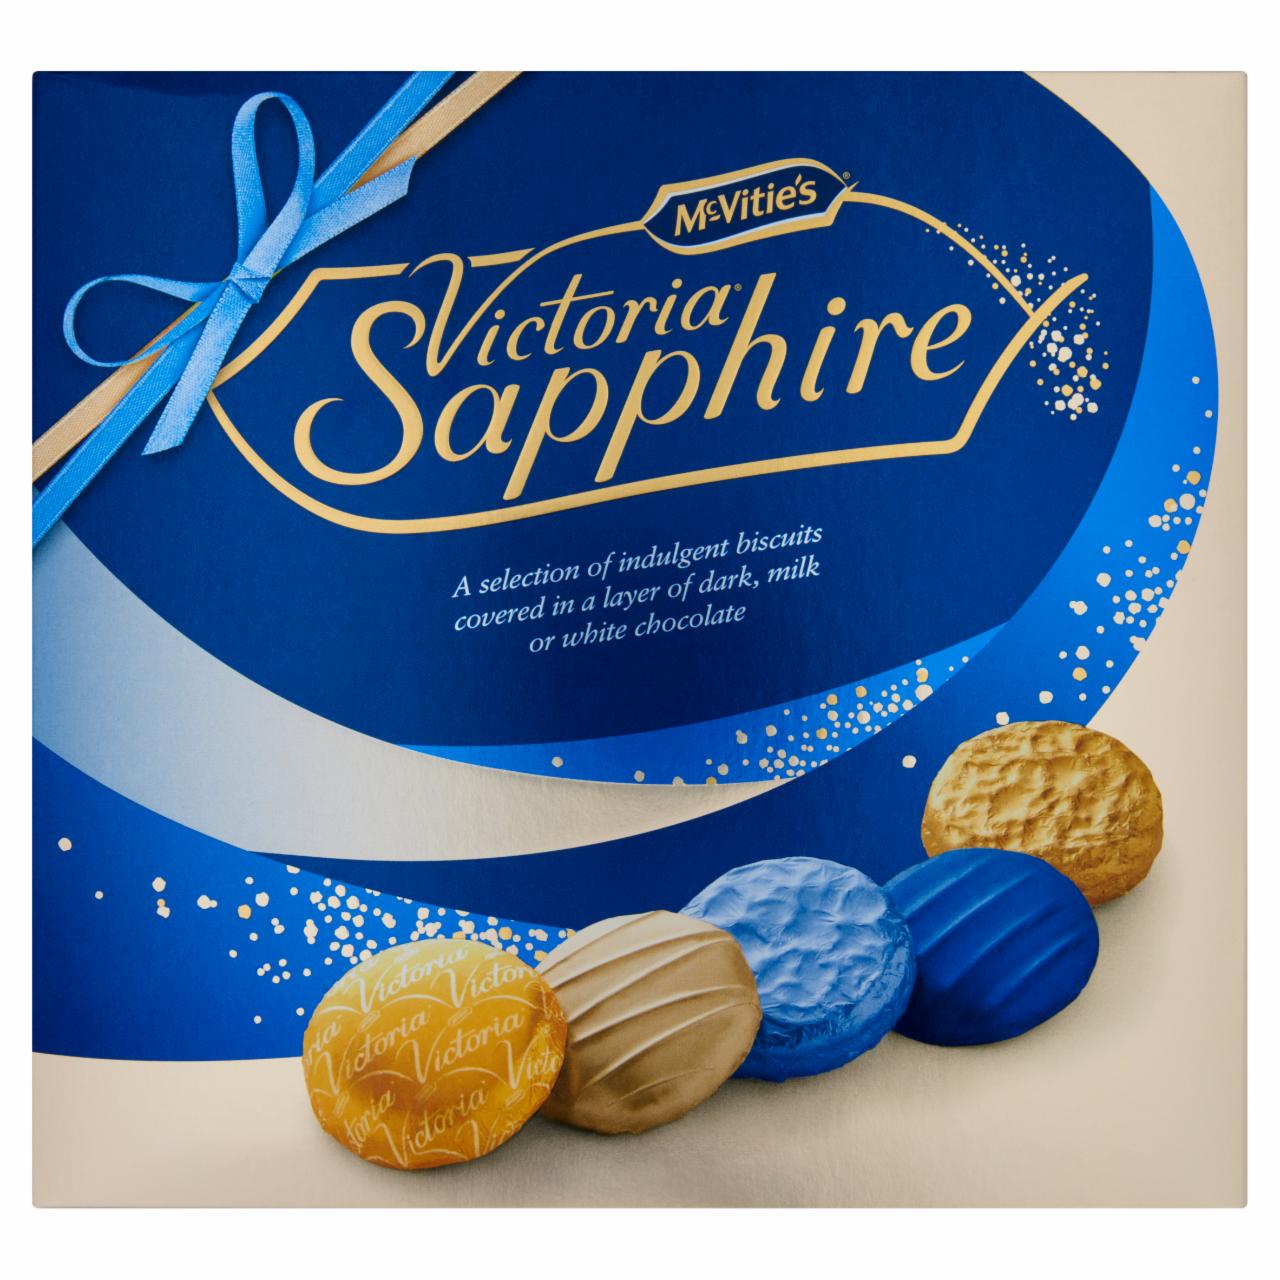 Képek - McVitie's Victoria Sapphire ét-, tej- és fehércsokoládé válogatás 385 g